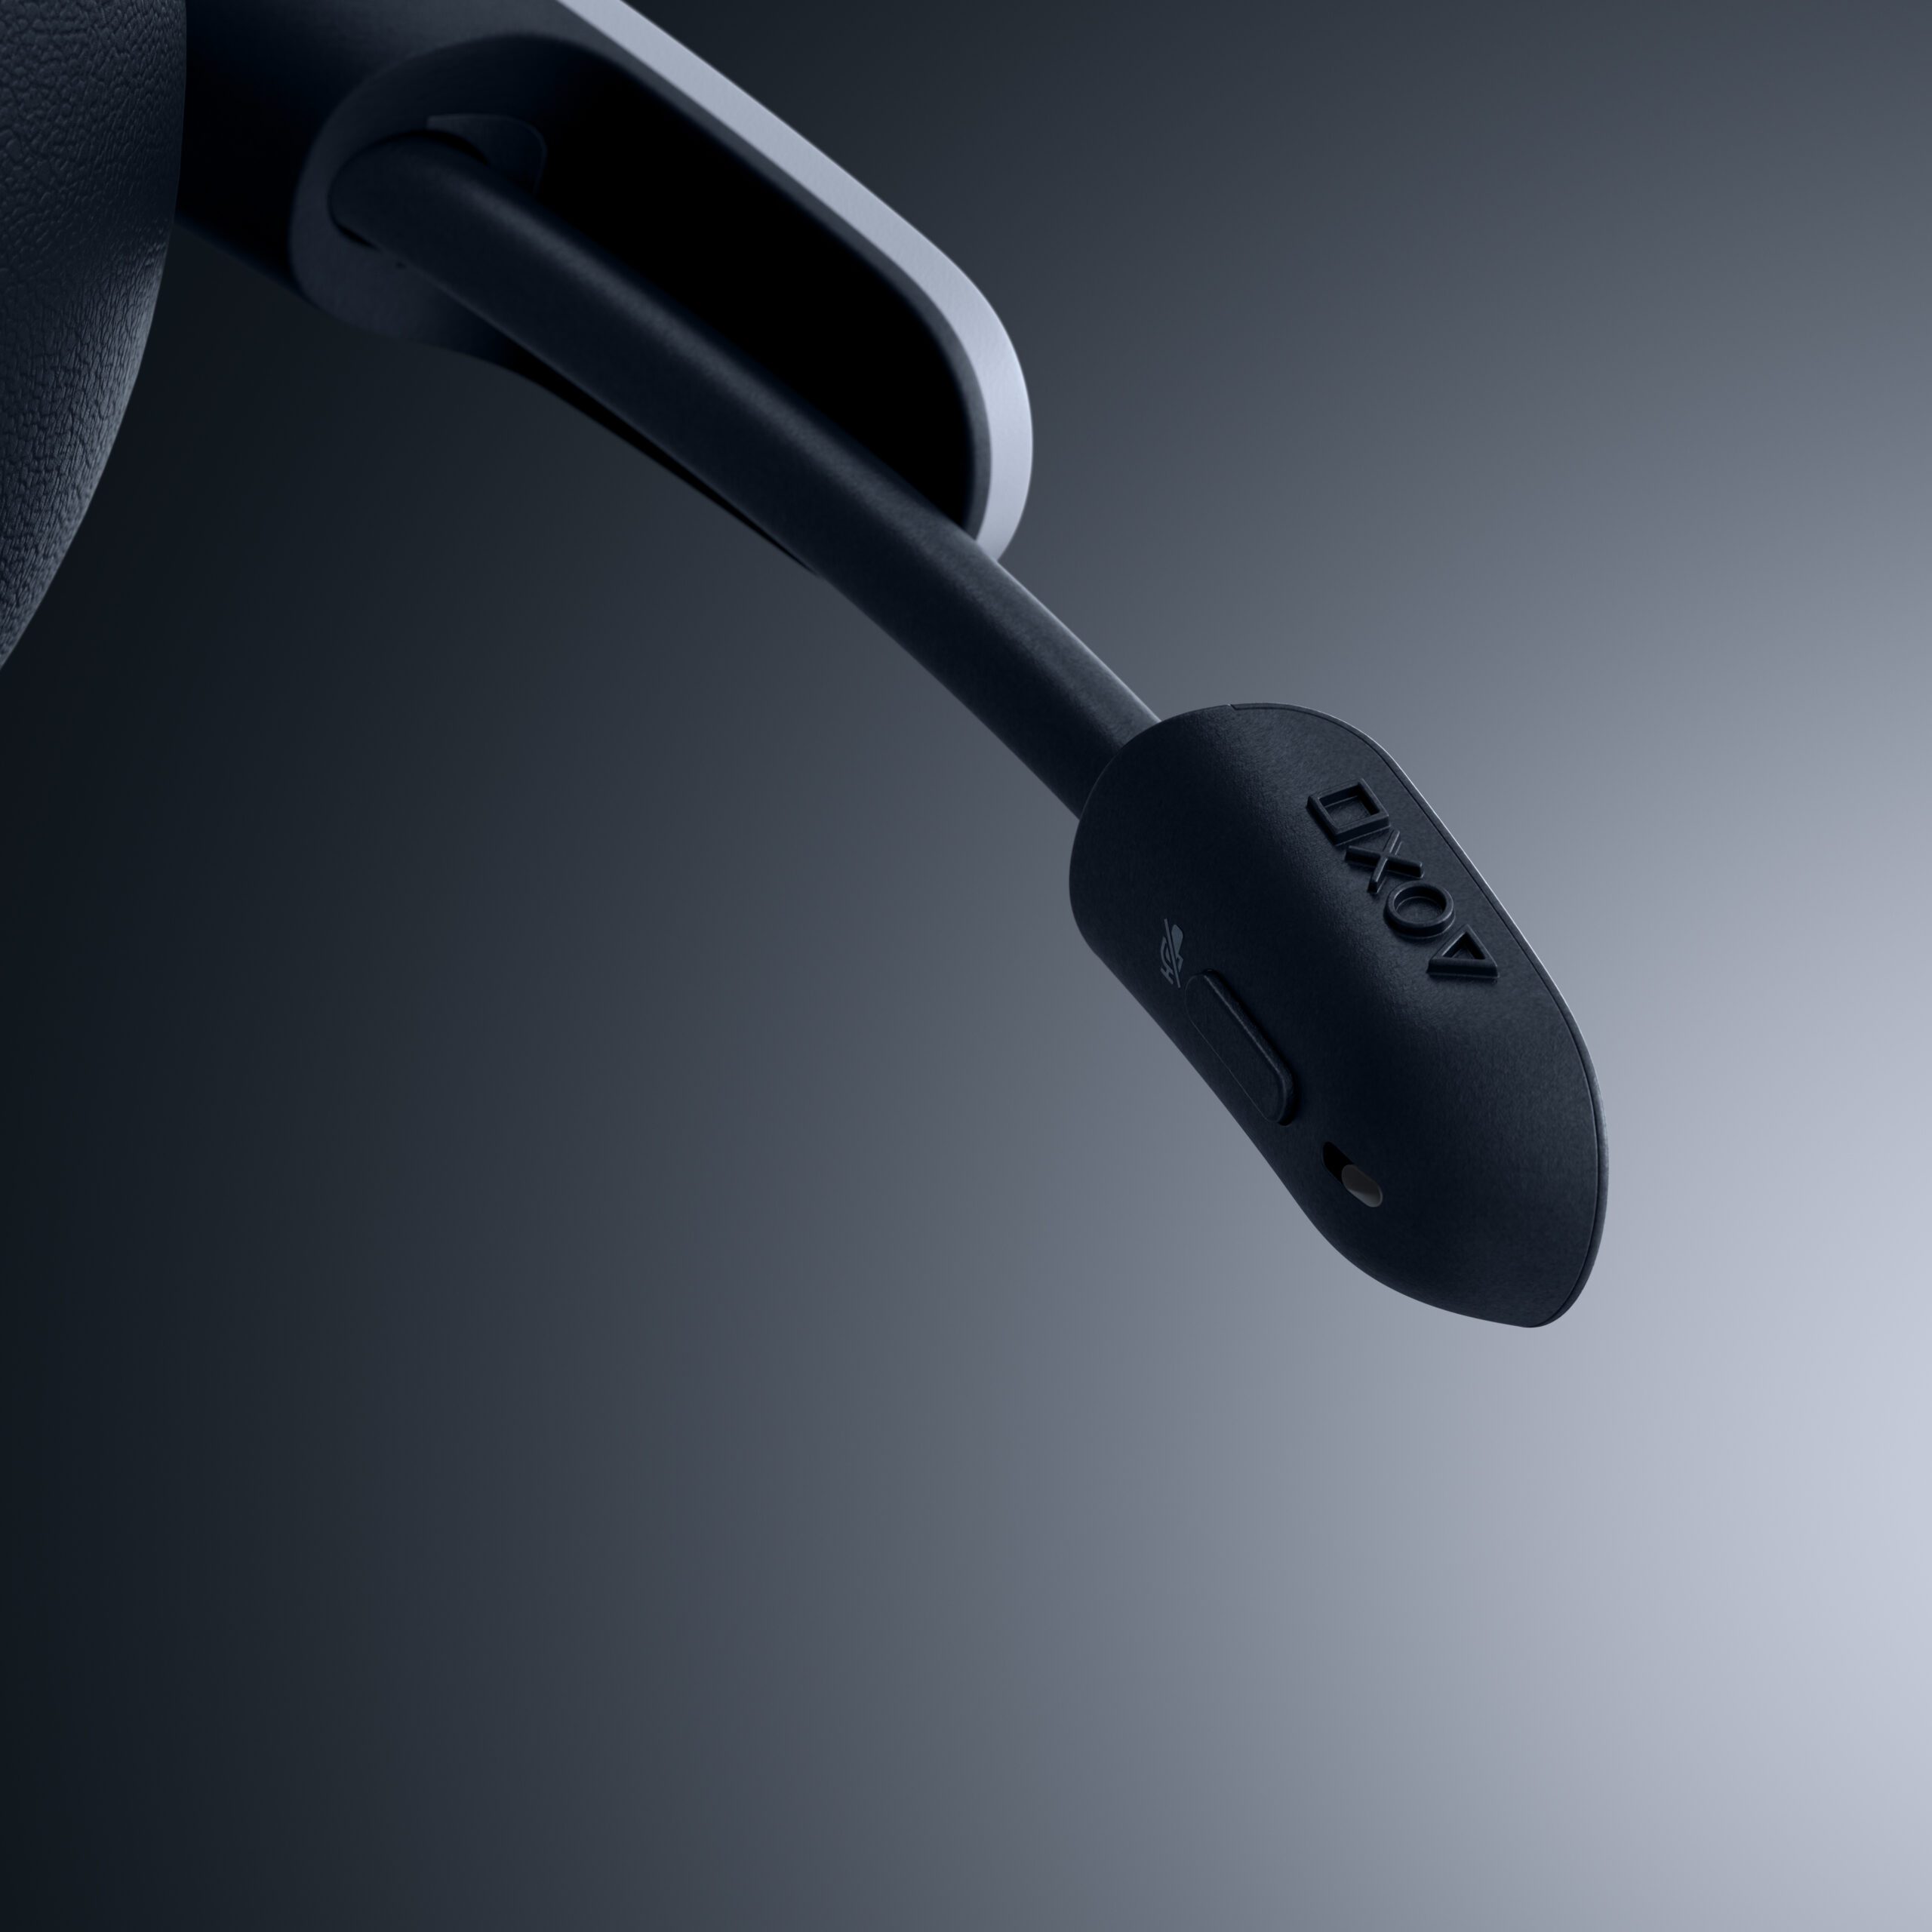 El primer dispositivo específico para el Uso a distancia de PlayStation  llega este año por 219,99€ – PlayStation.Blog en español